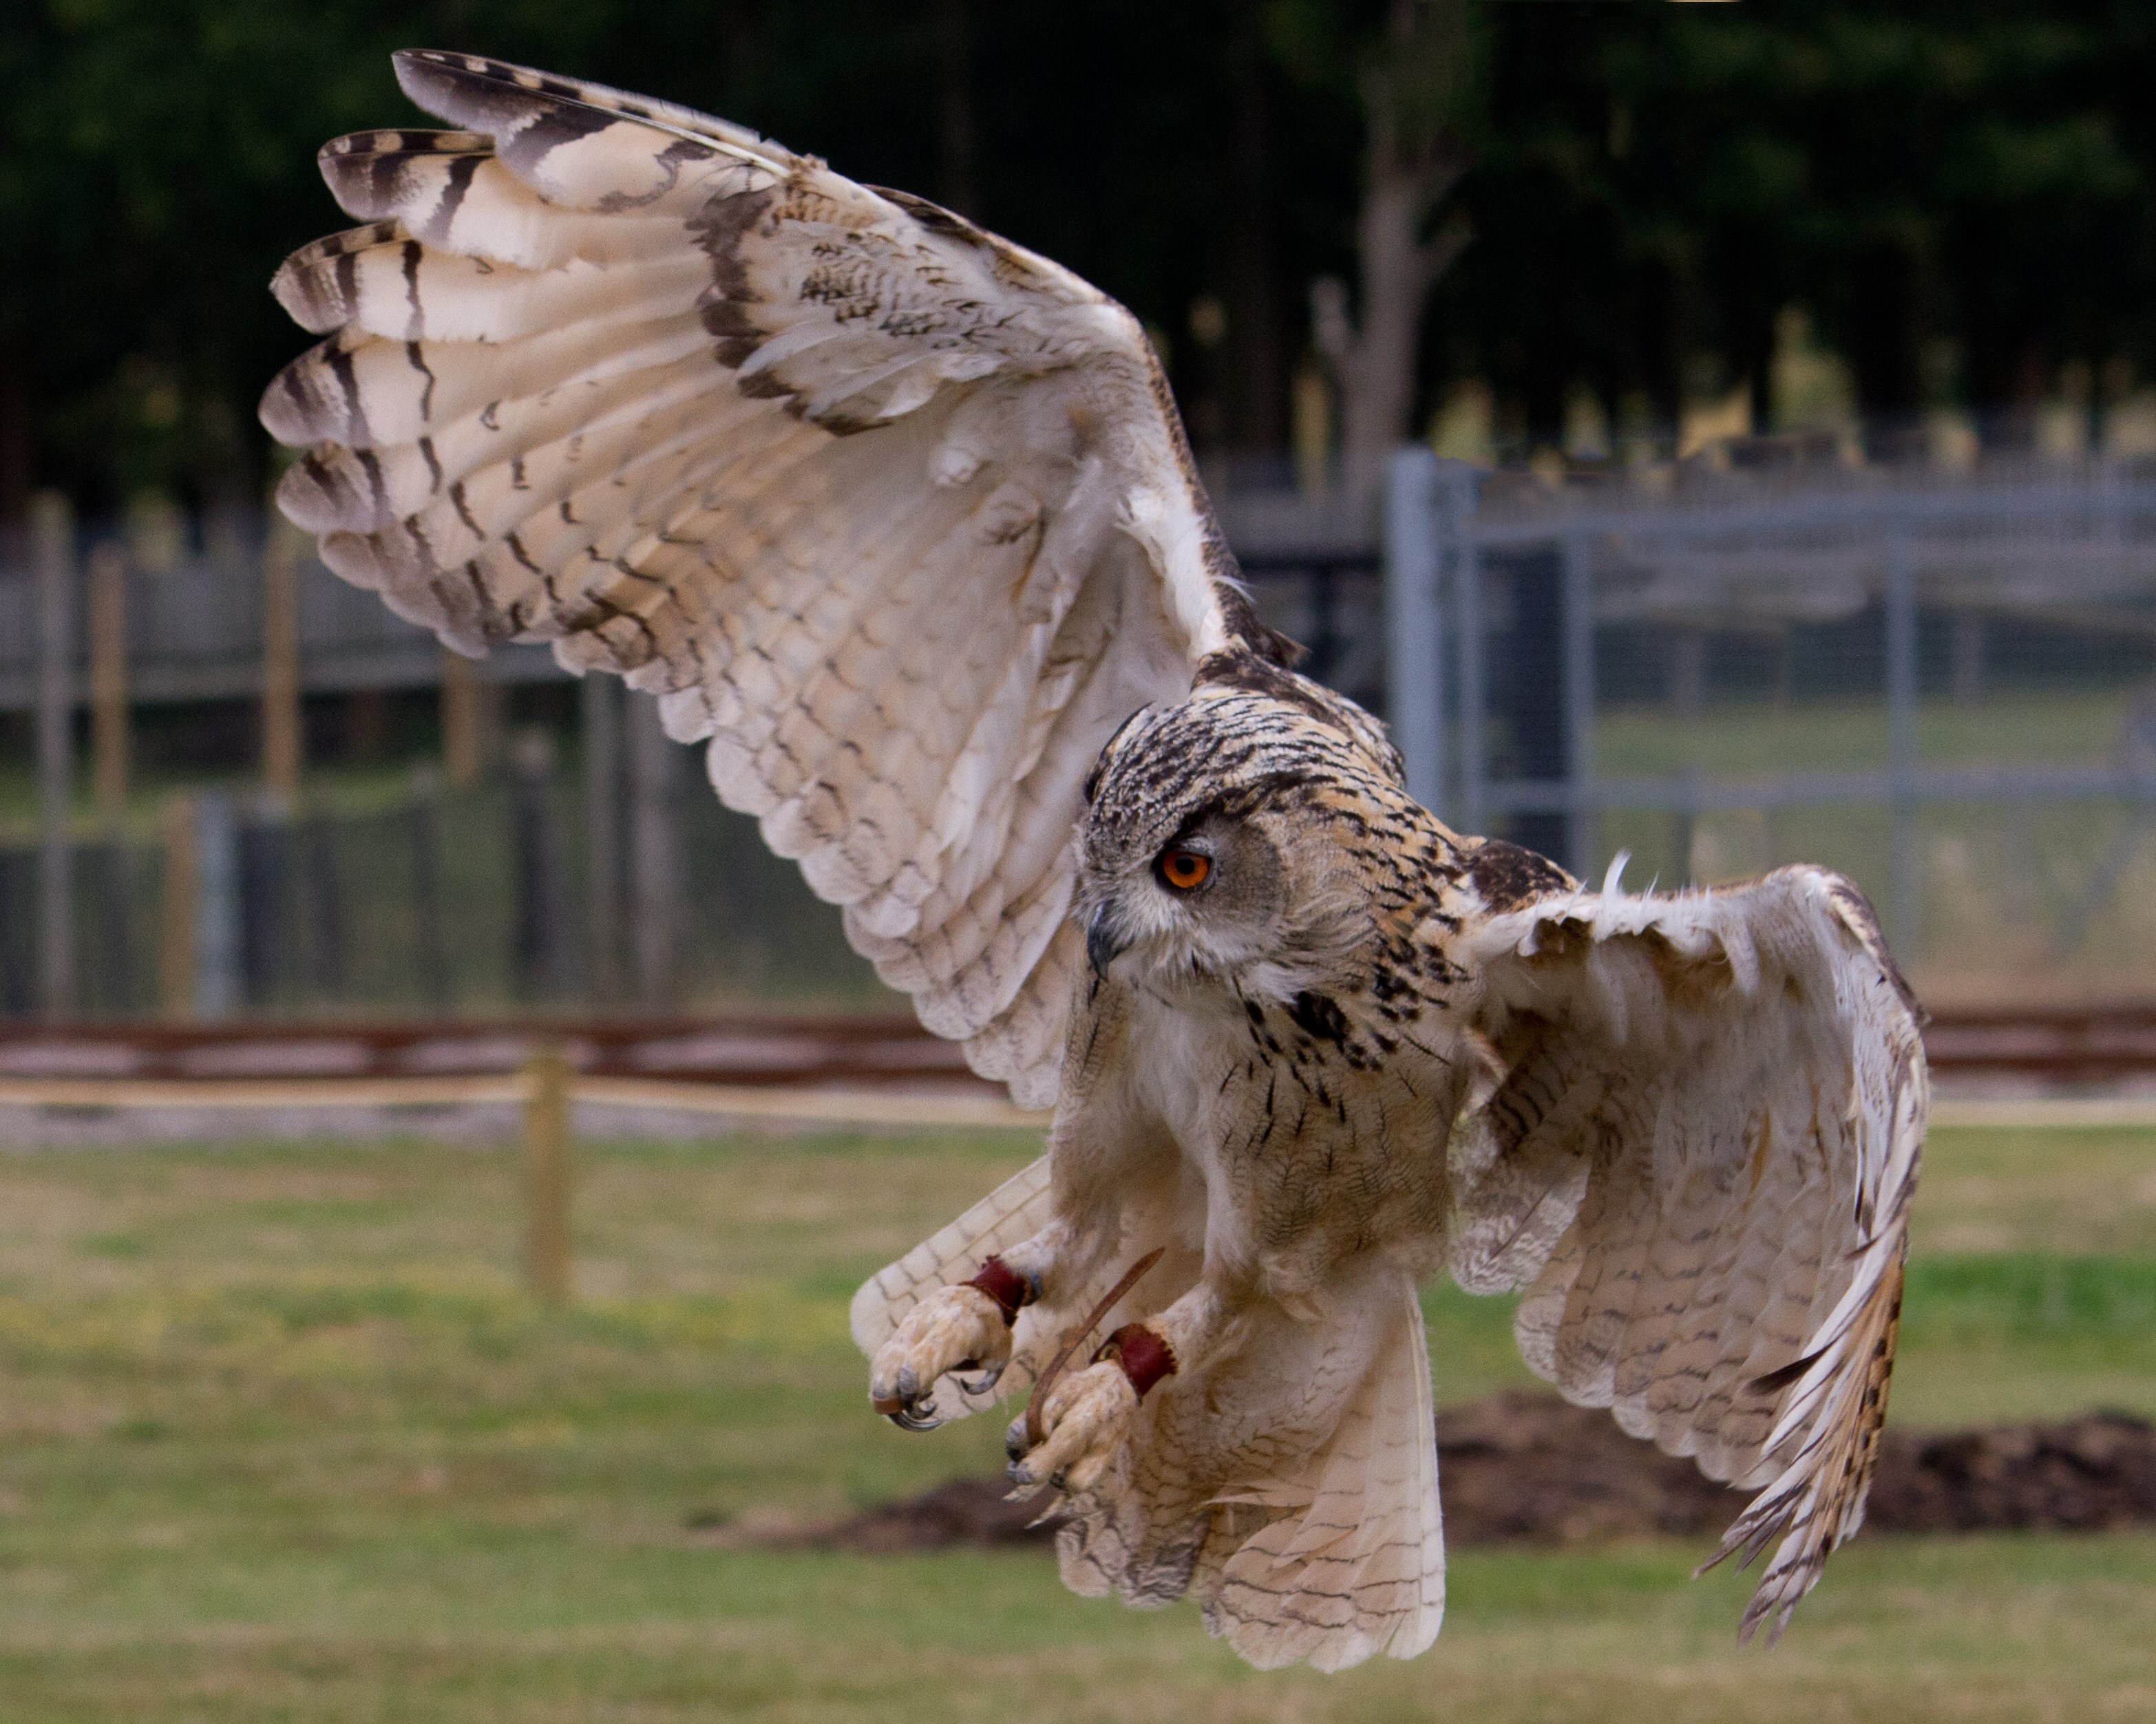 Turkmenian Eagle Owl flies through the air